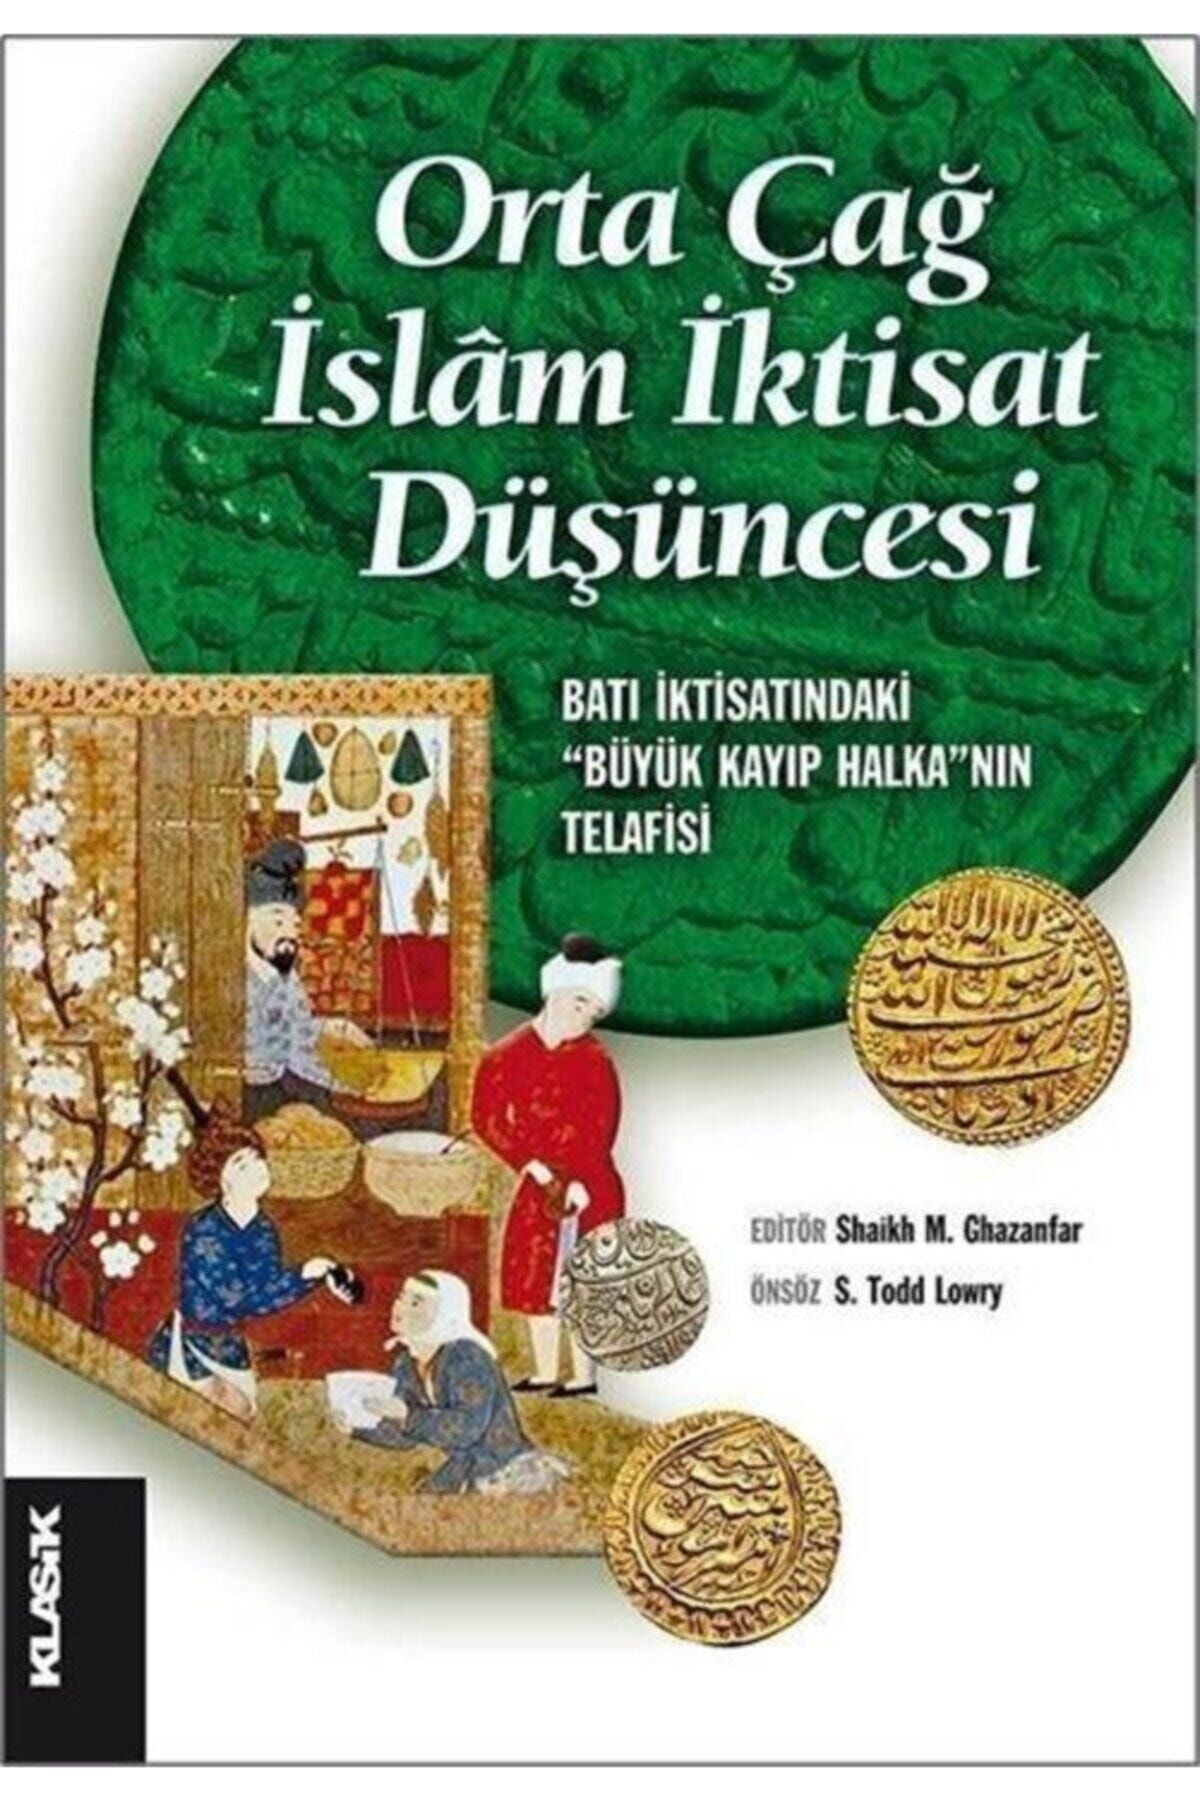 Klasik Yayınları Orta Çağ Islam Iktisat Düşüncesi & Batı Iktisatındaki "büyük Kayıp Halka"nın Telafisi